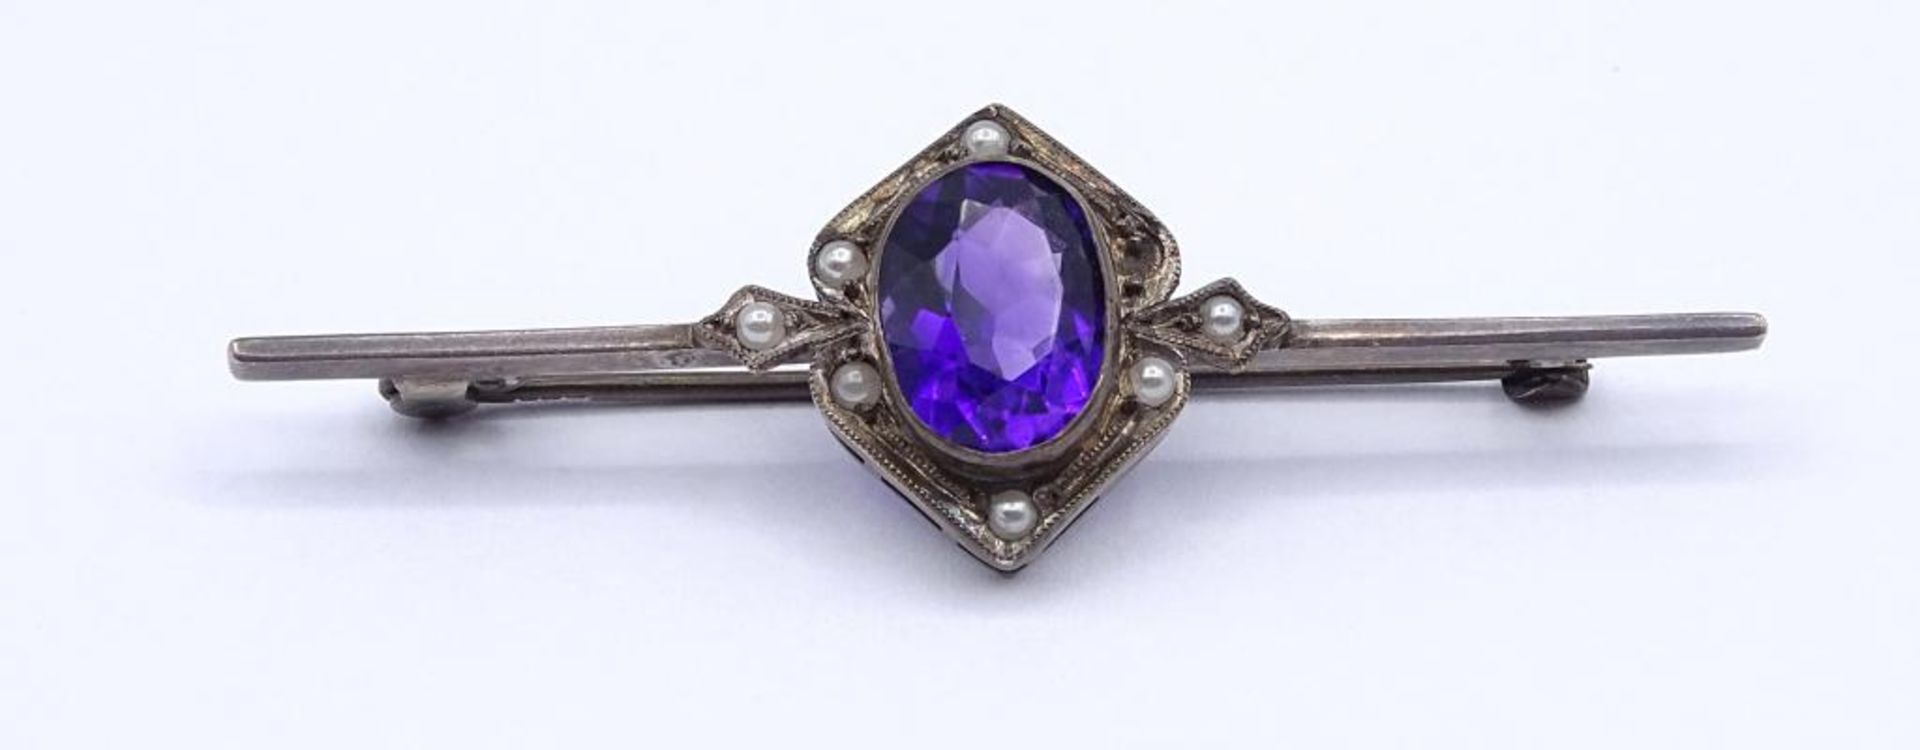 Alte Silber Brosche mit Perlchen und facettierten violetten Stein,1x Perle fehlt,Silber 835/000,L-